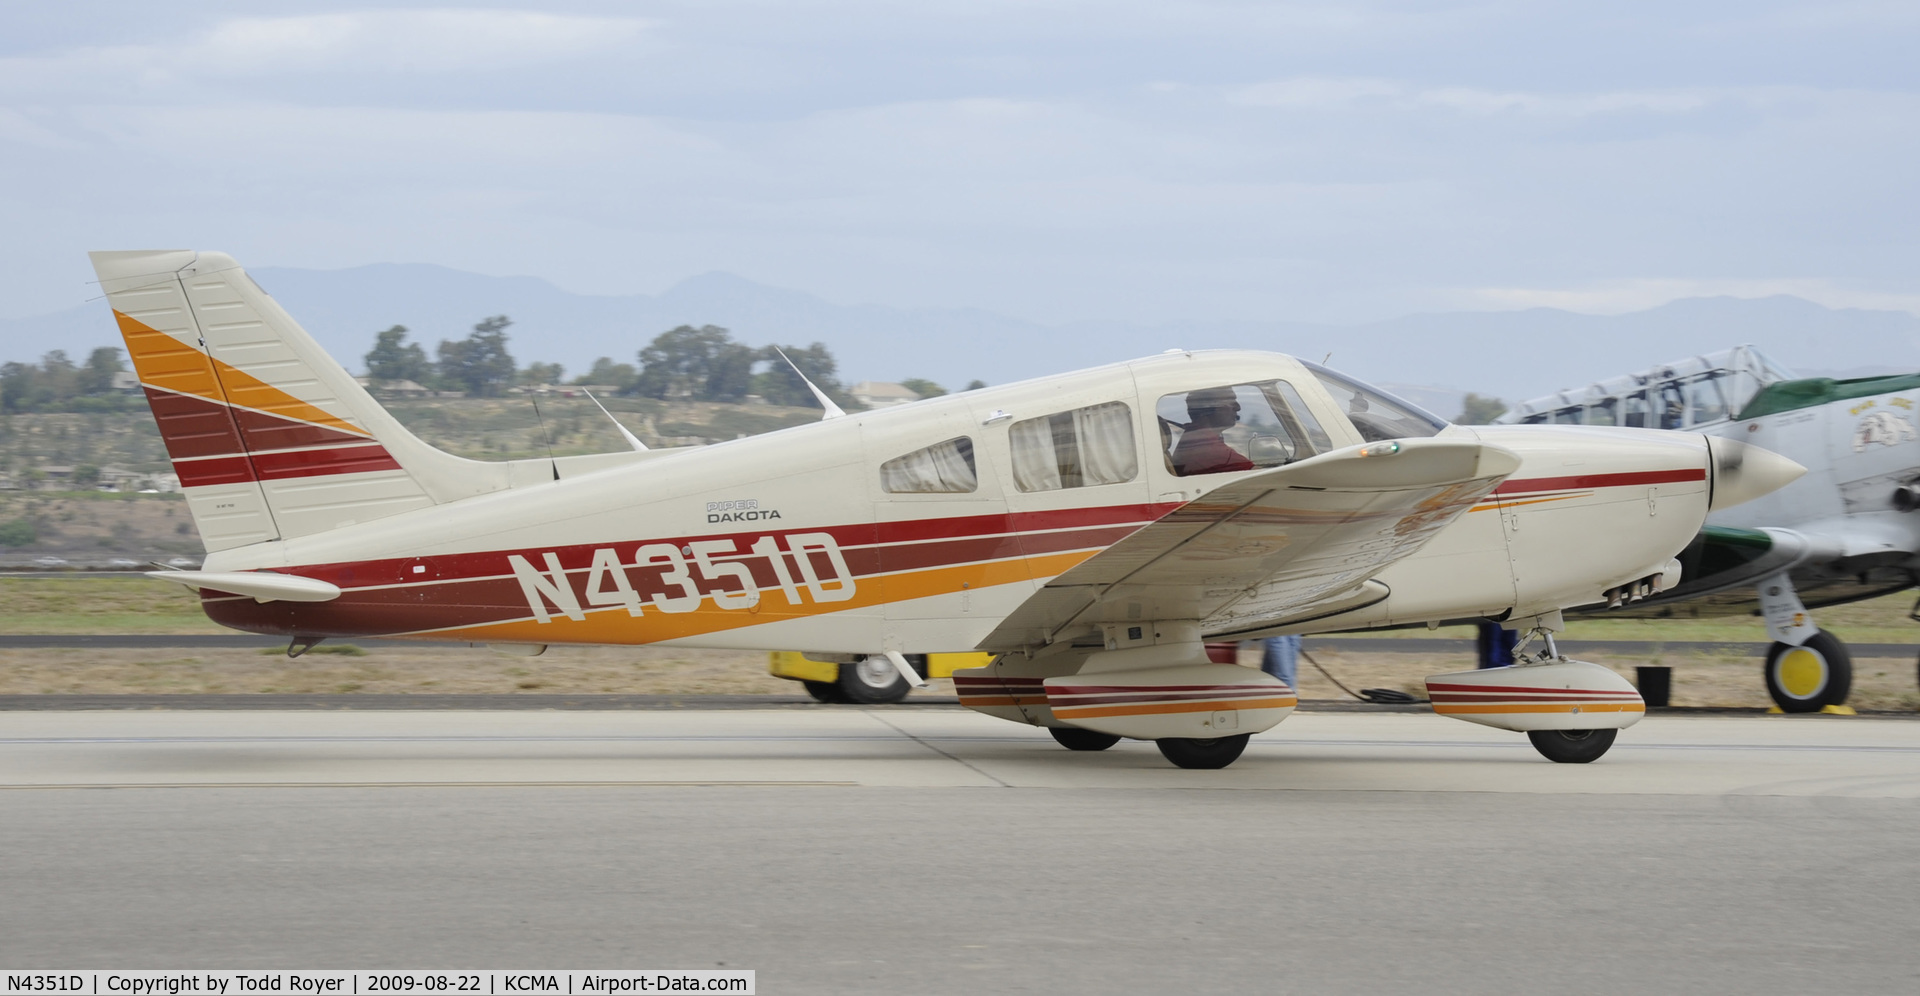 N4351D, 1984 Piper PA-28-236 Dakota C/N 28-8411016, CAMARILLO AIR SHOW 2009